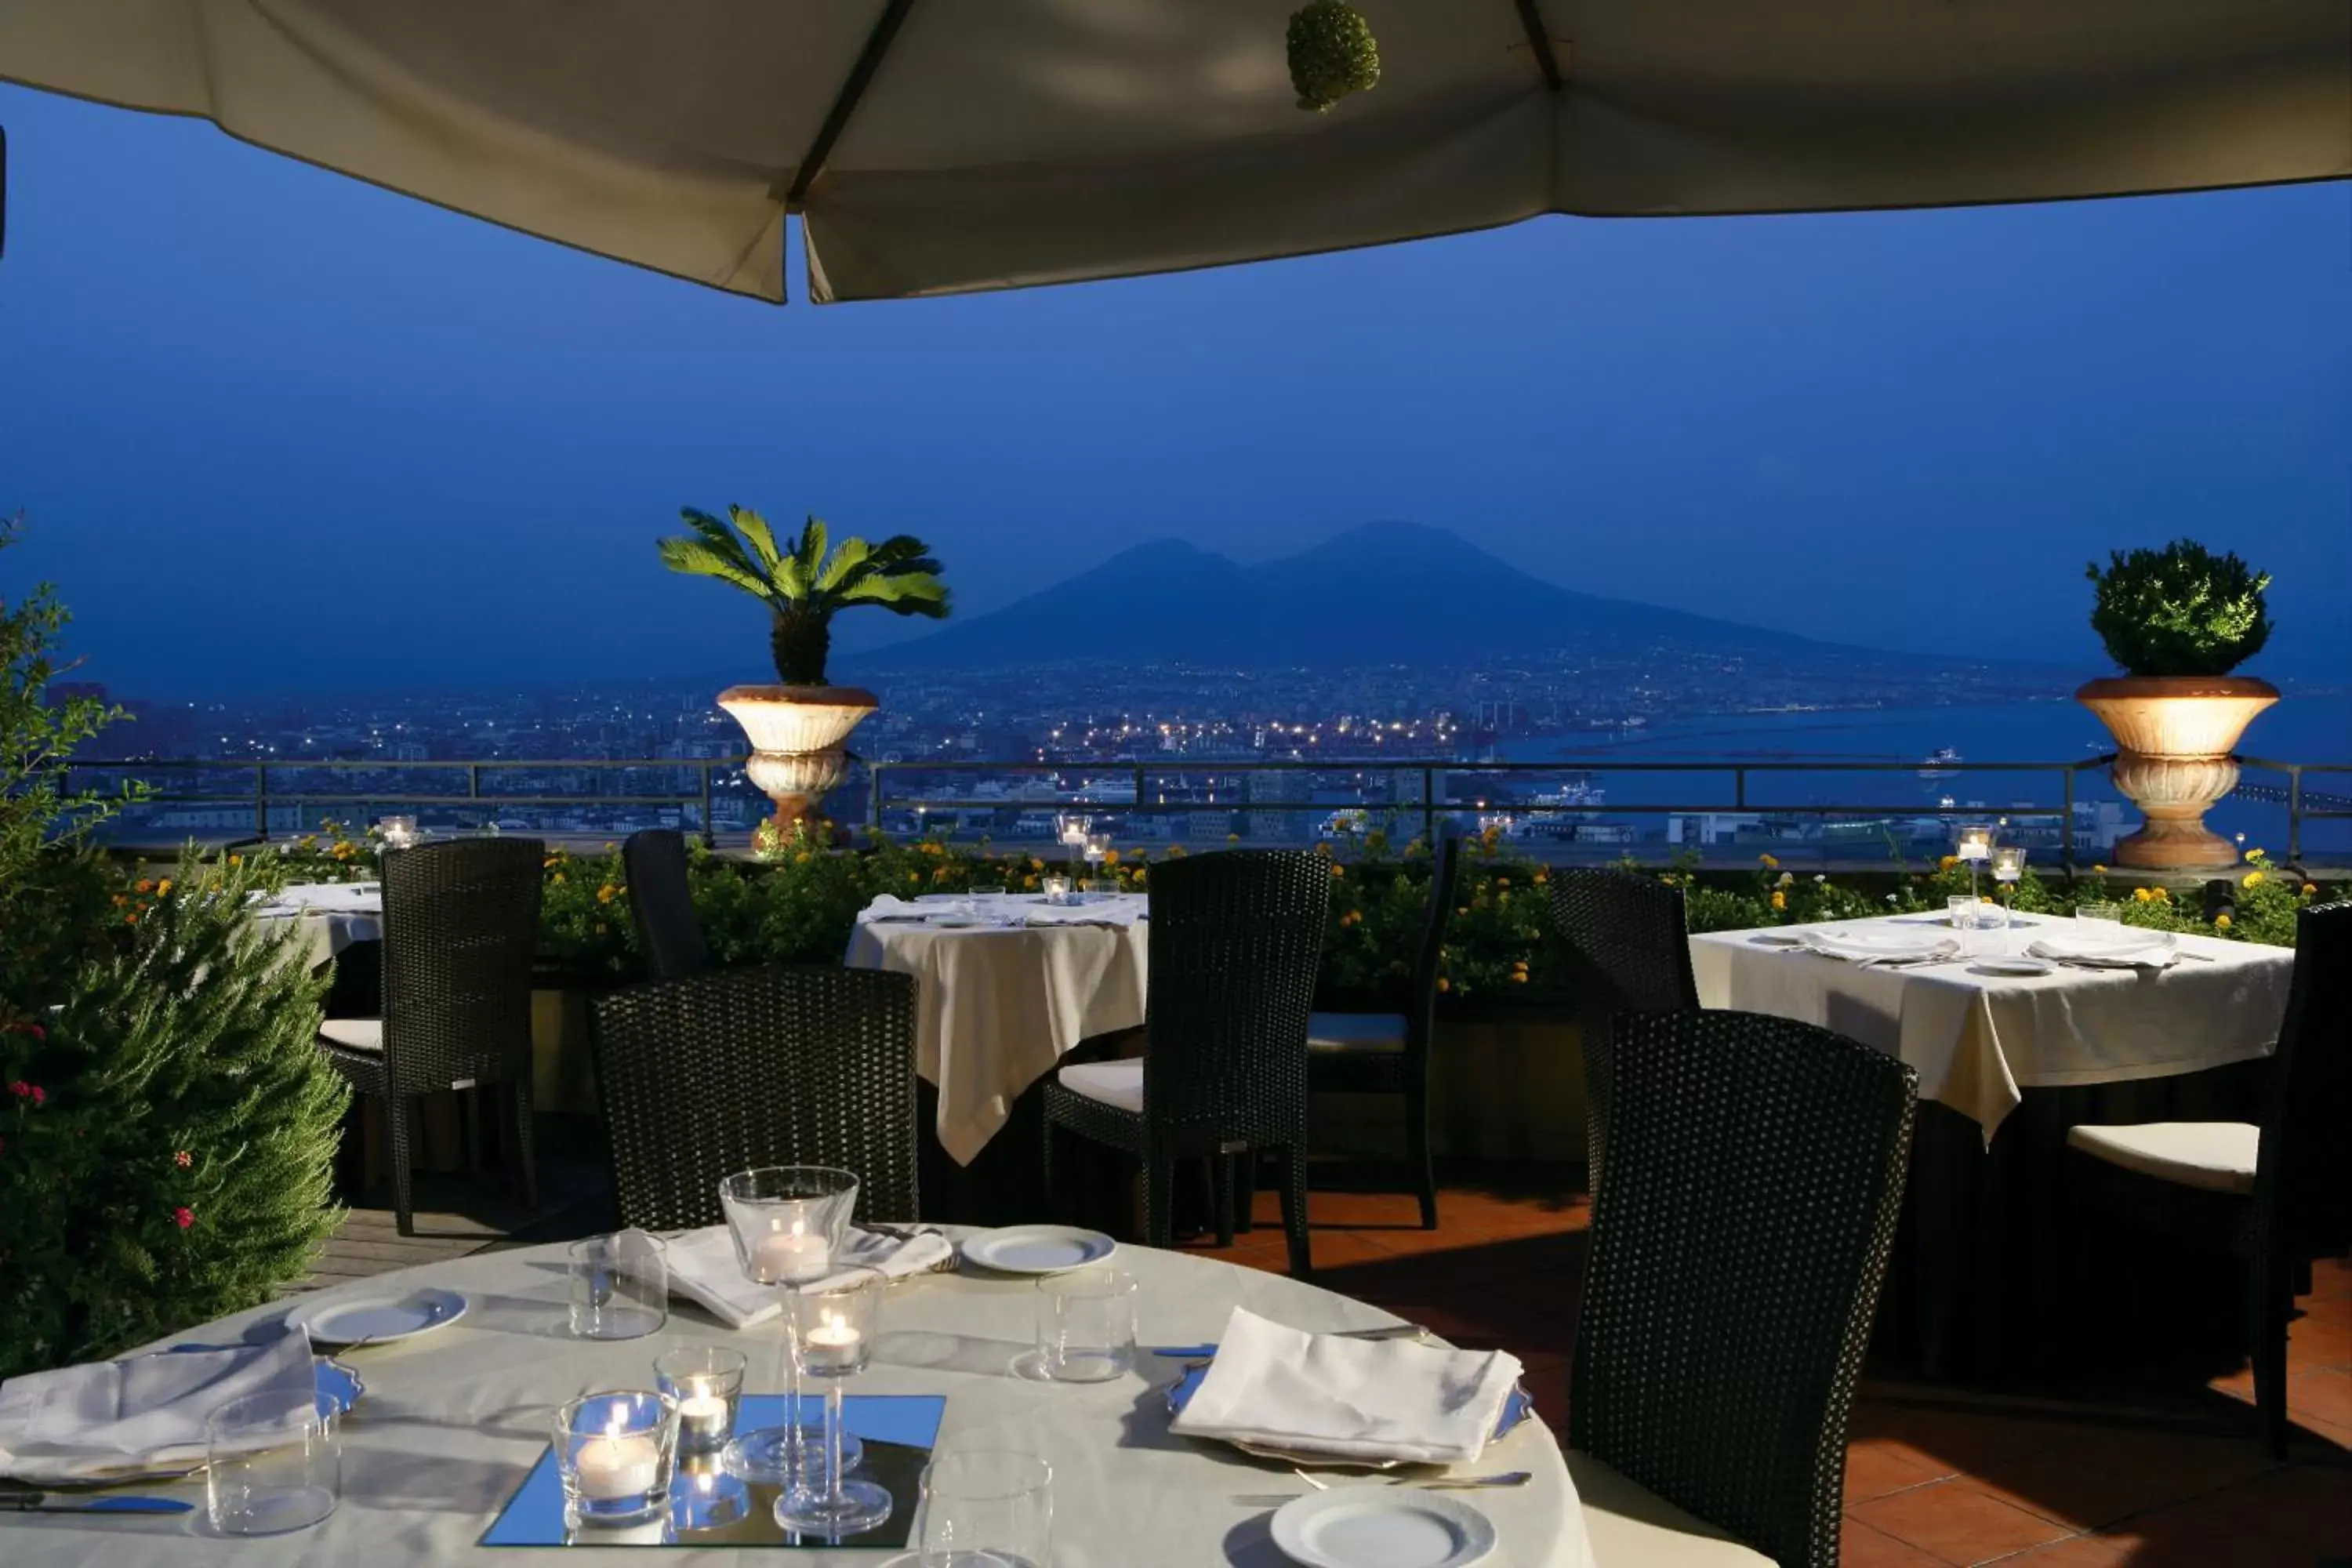 Restaurant/Places to Eat in San Francesco al Monte